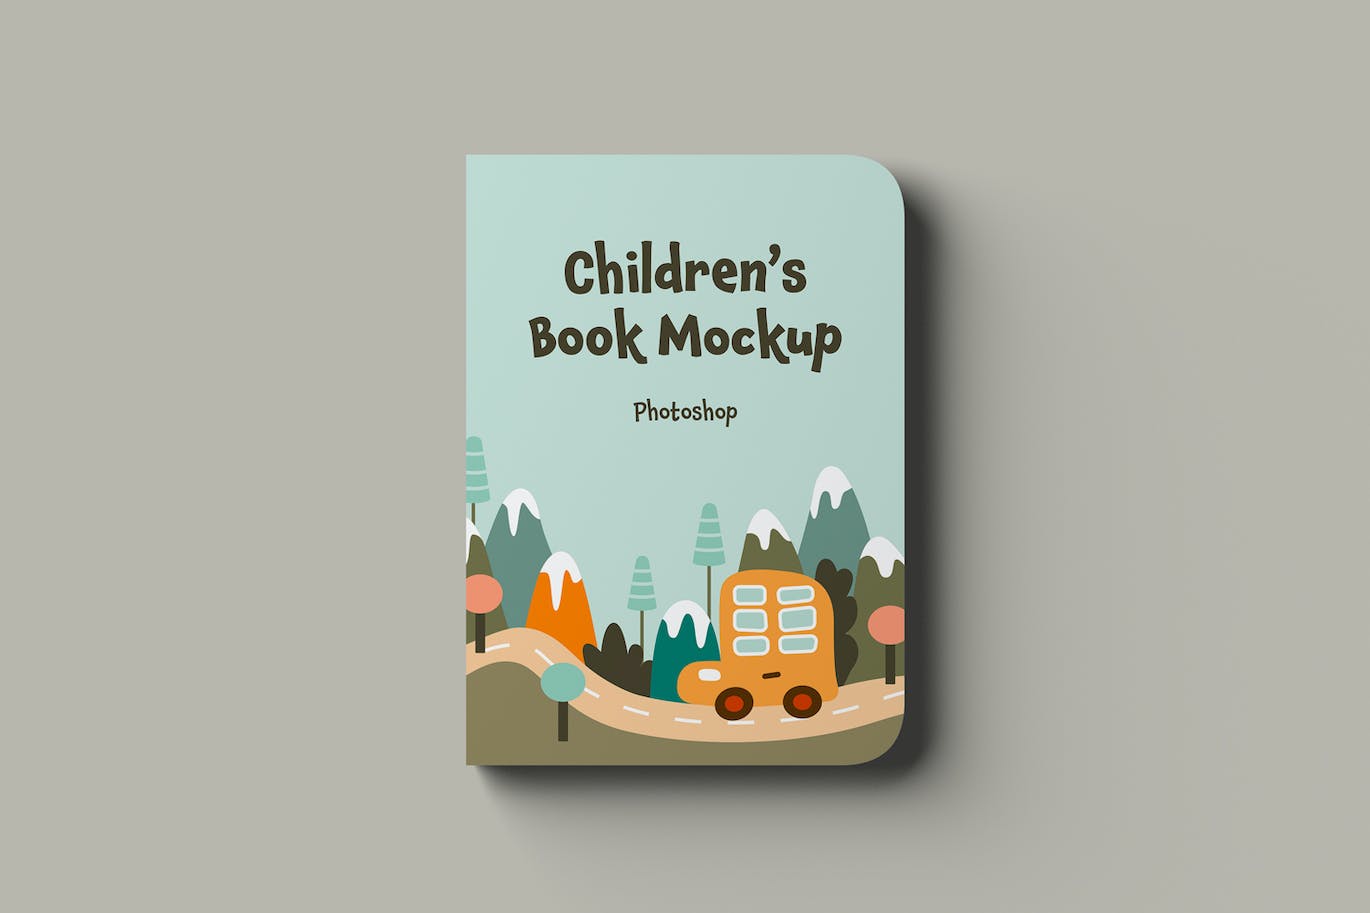 儿童书籍封面设计样机 Children’s Book Mockups 样机素材 第4张